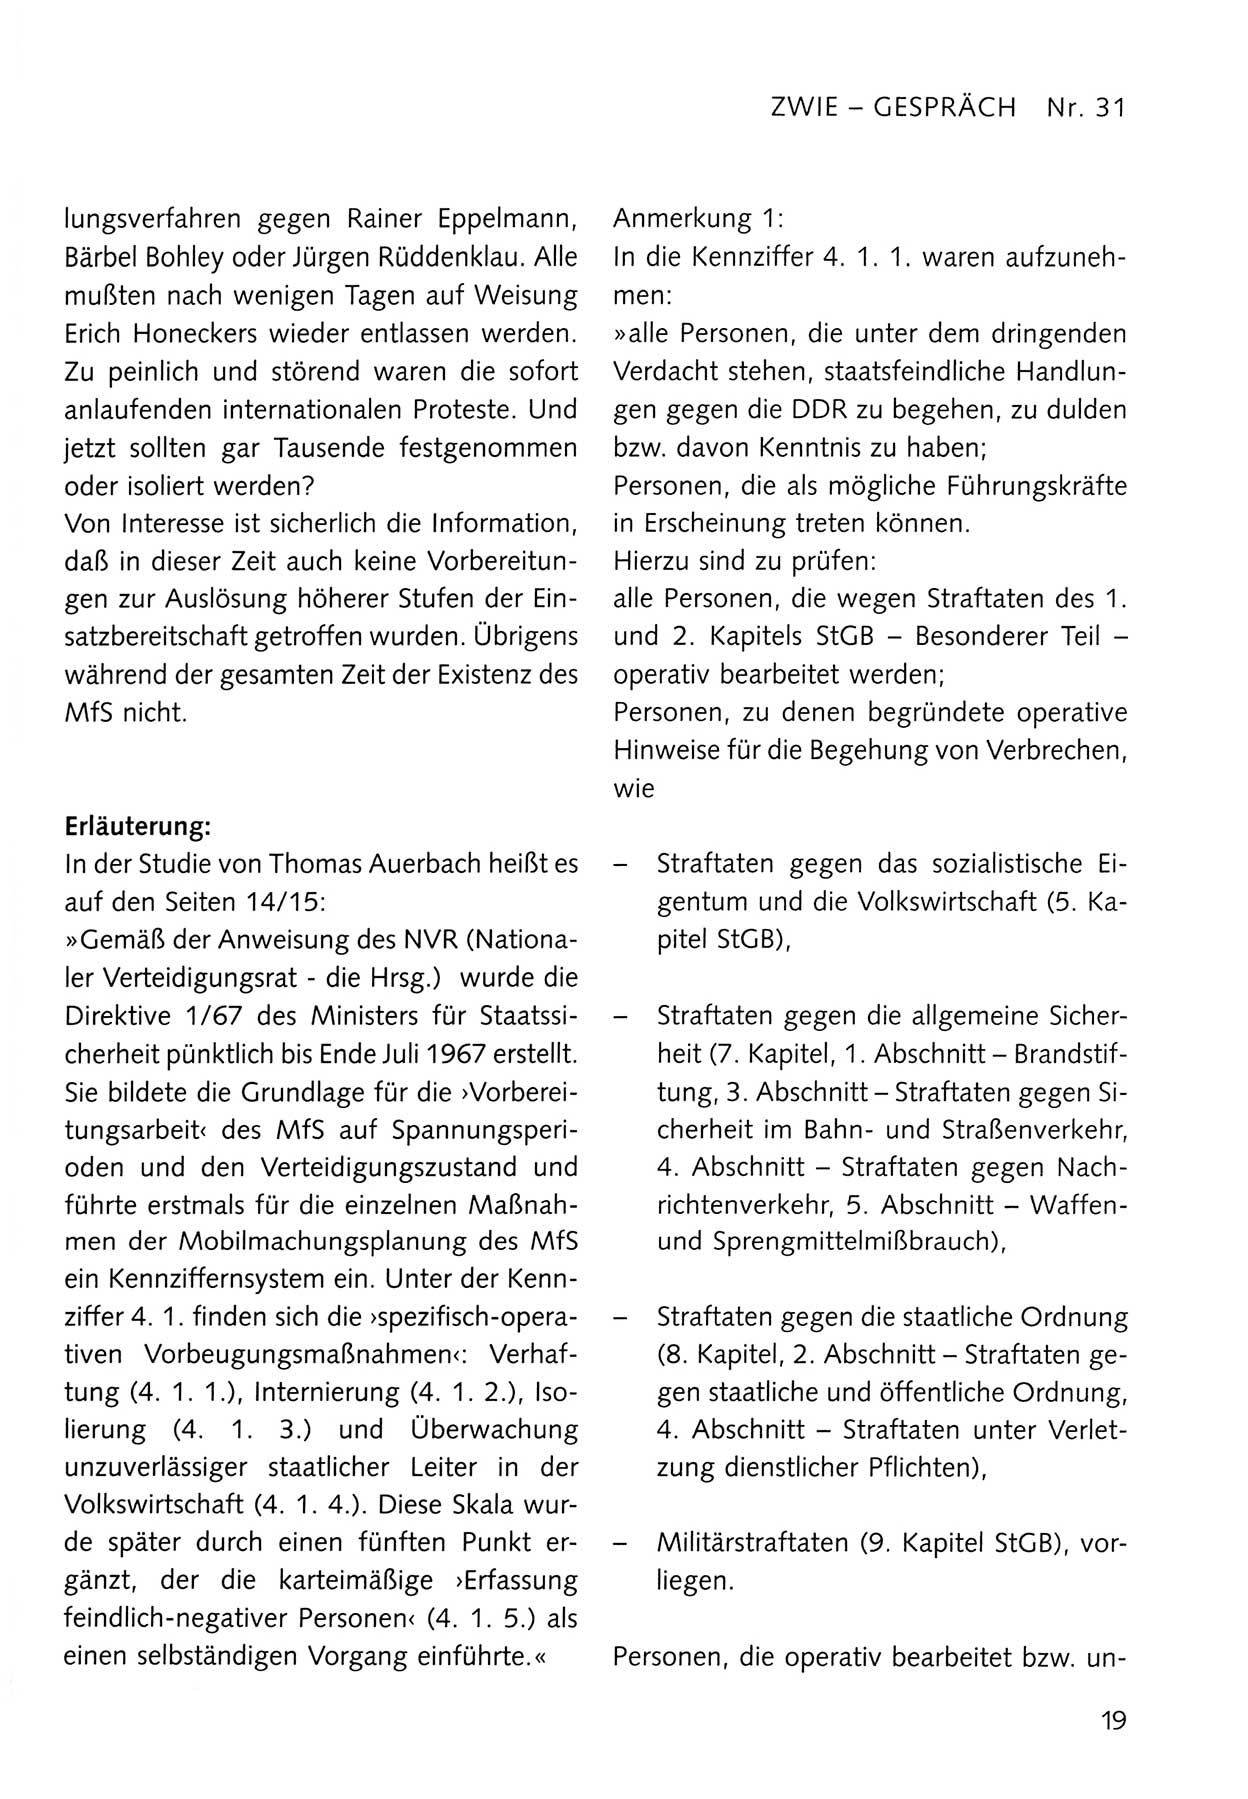 Zwie-Gespräch, Beiträge zum Umgang mit der Staatssicherheits-Vergangenheit [Deutsche Demokratische Republik (DDR)], Ausgabe Nr. 31, Berlin 1995, Seite 19 (Zwie-Gespr. Ausg. 31 1995, S. 19)